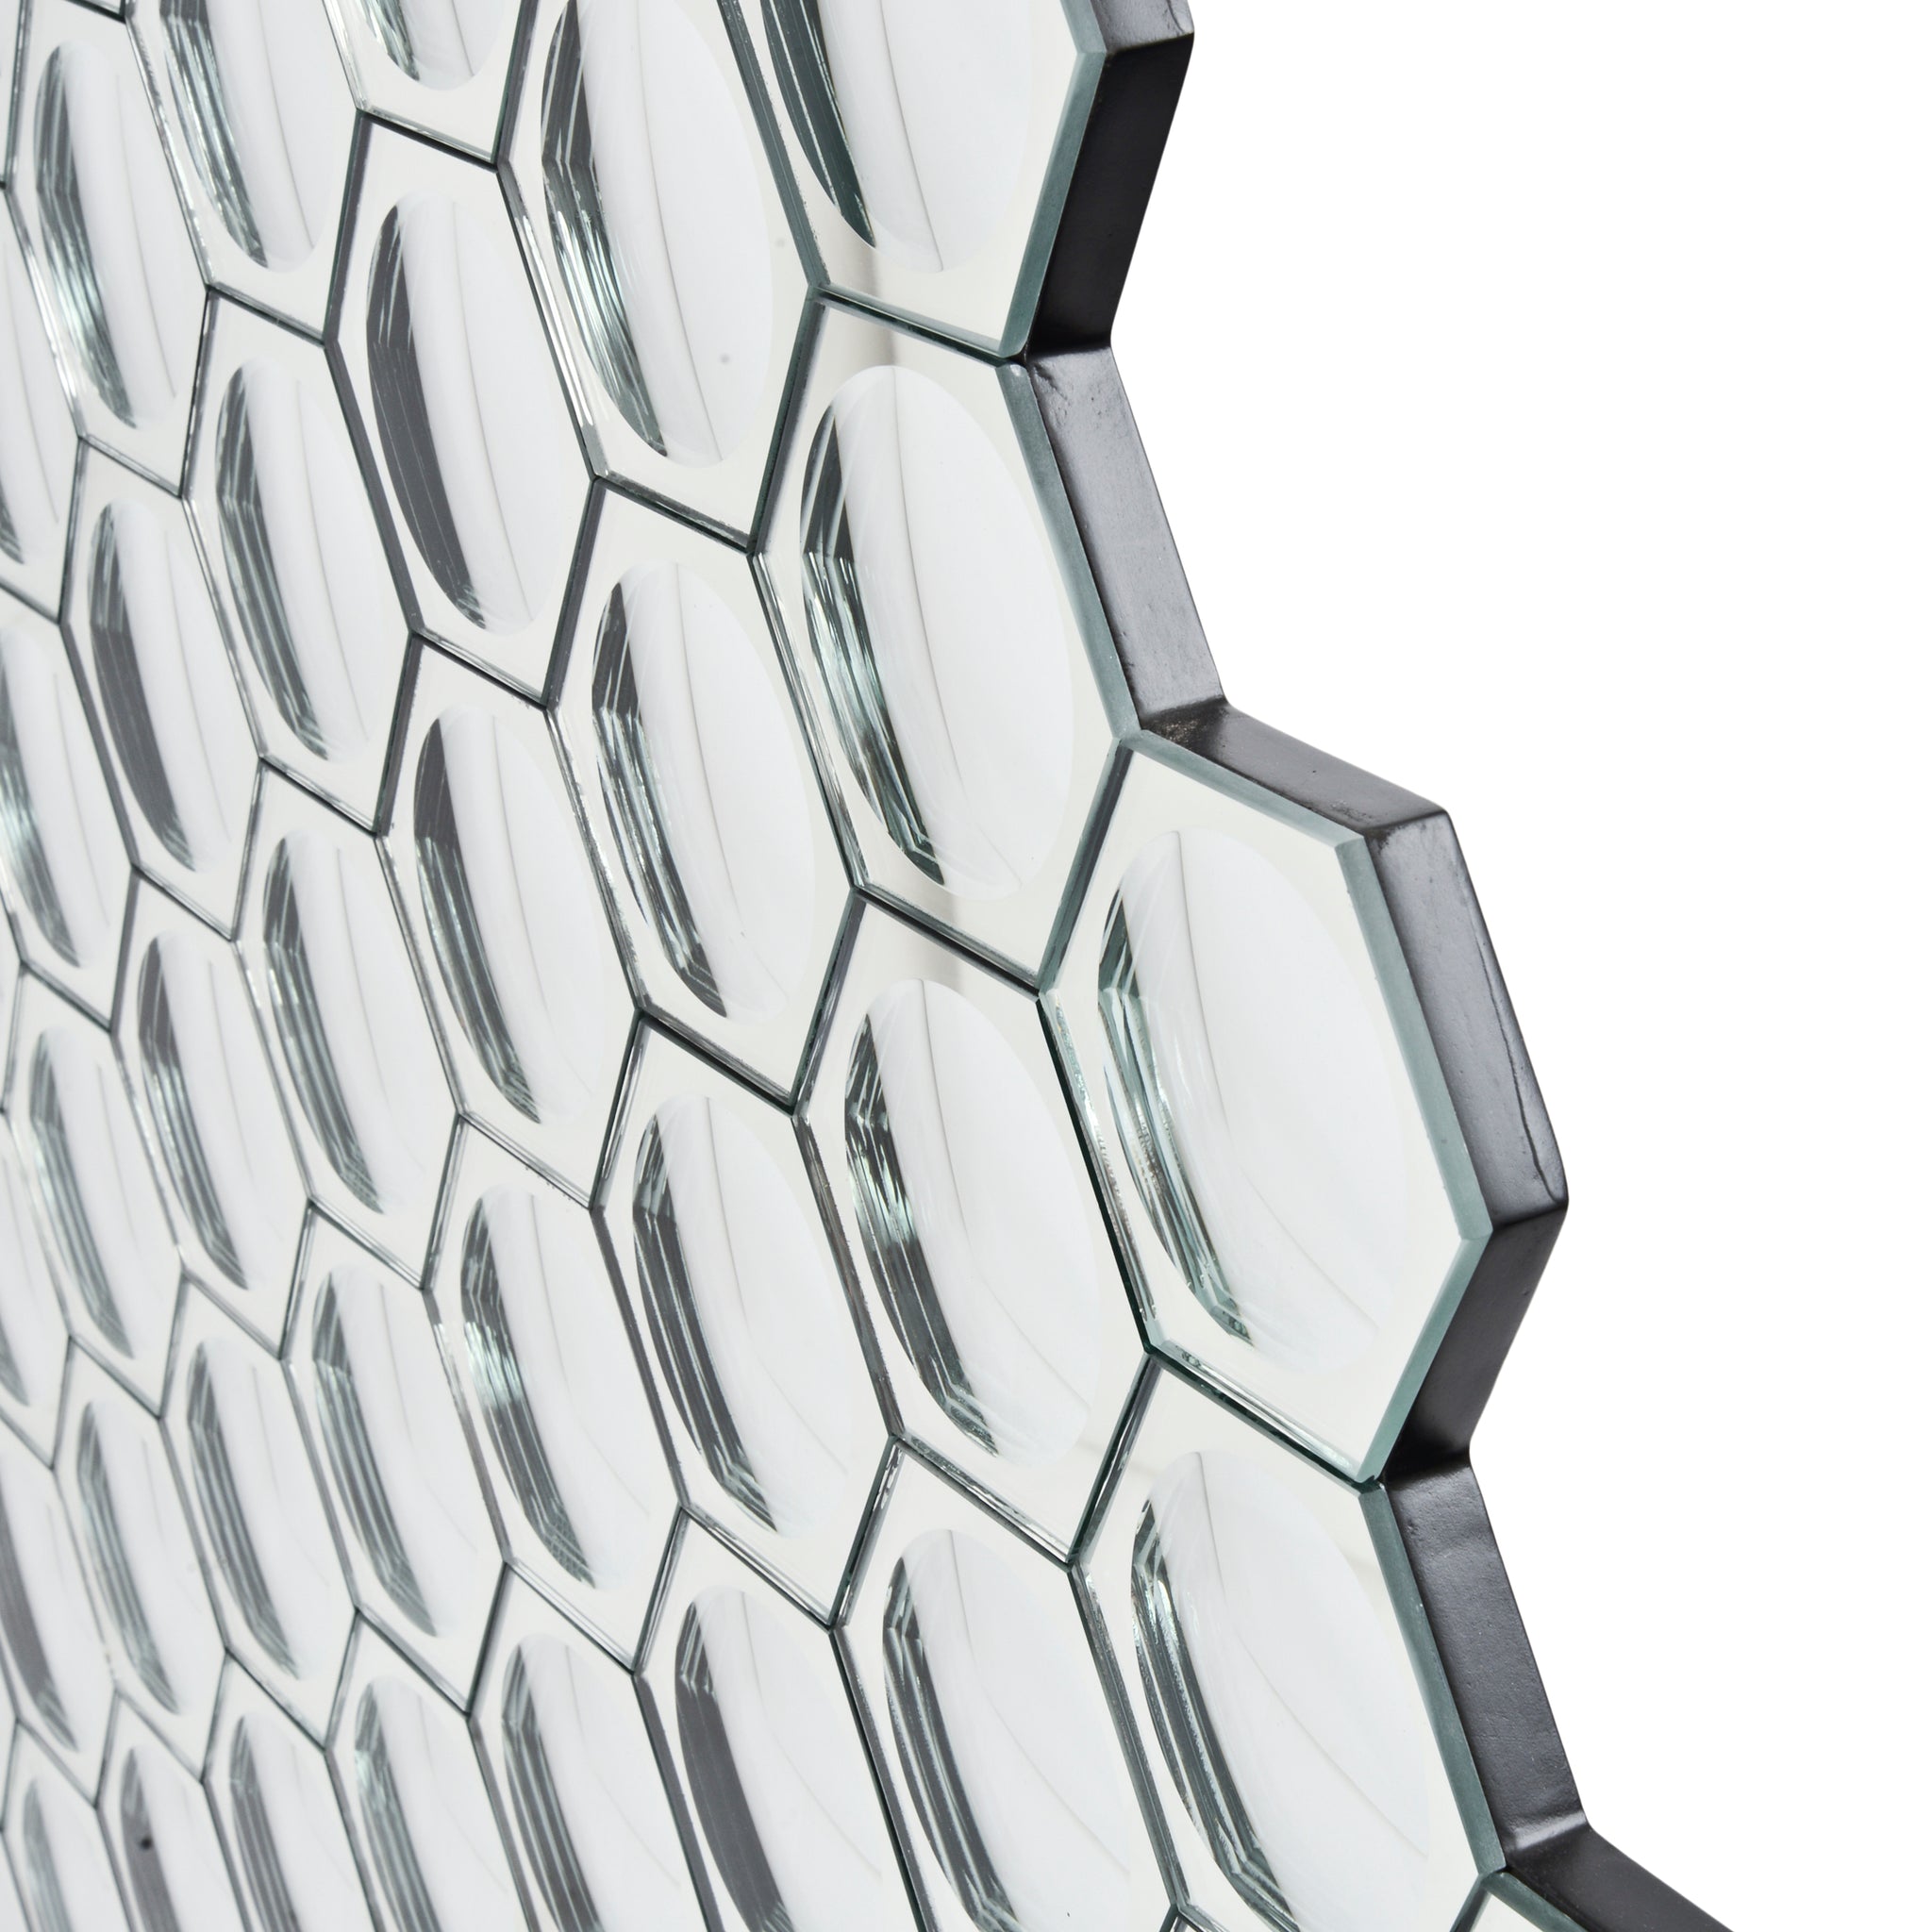 Hexal Honeycomb Convex Mirror Wall Art